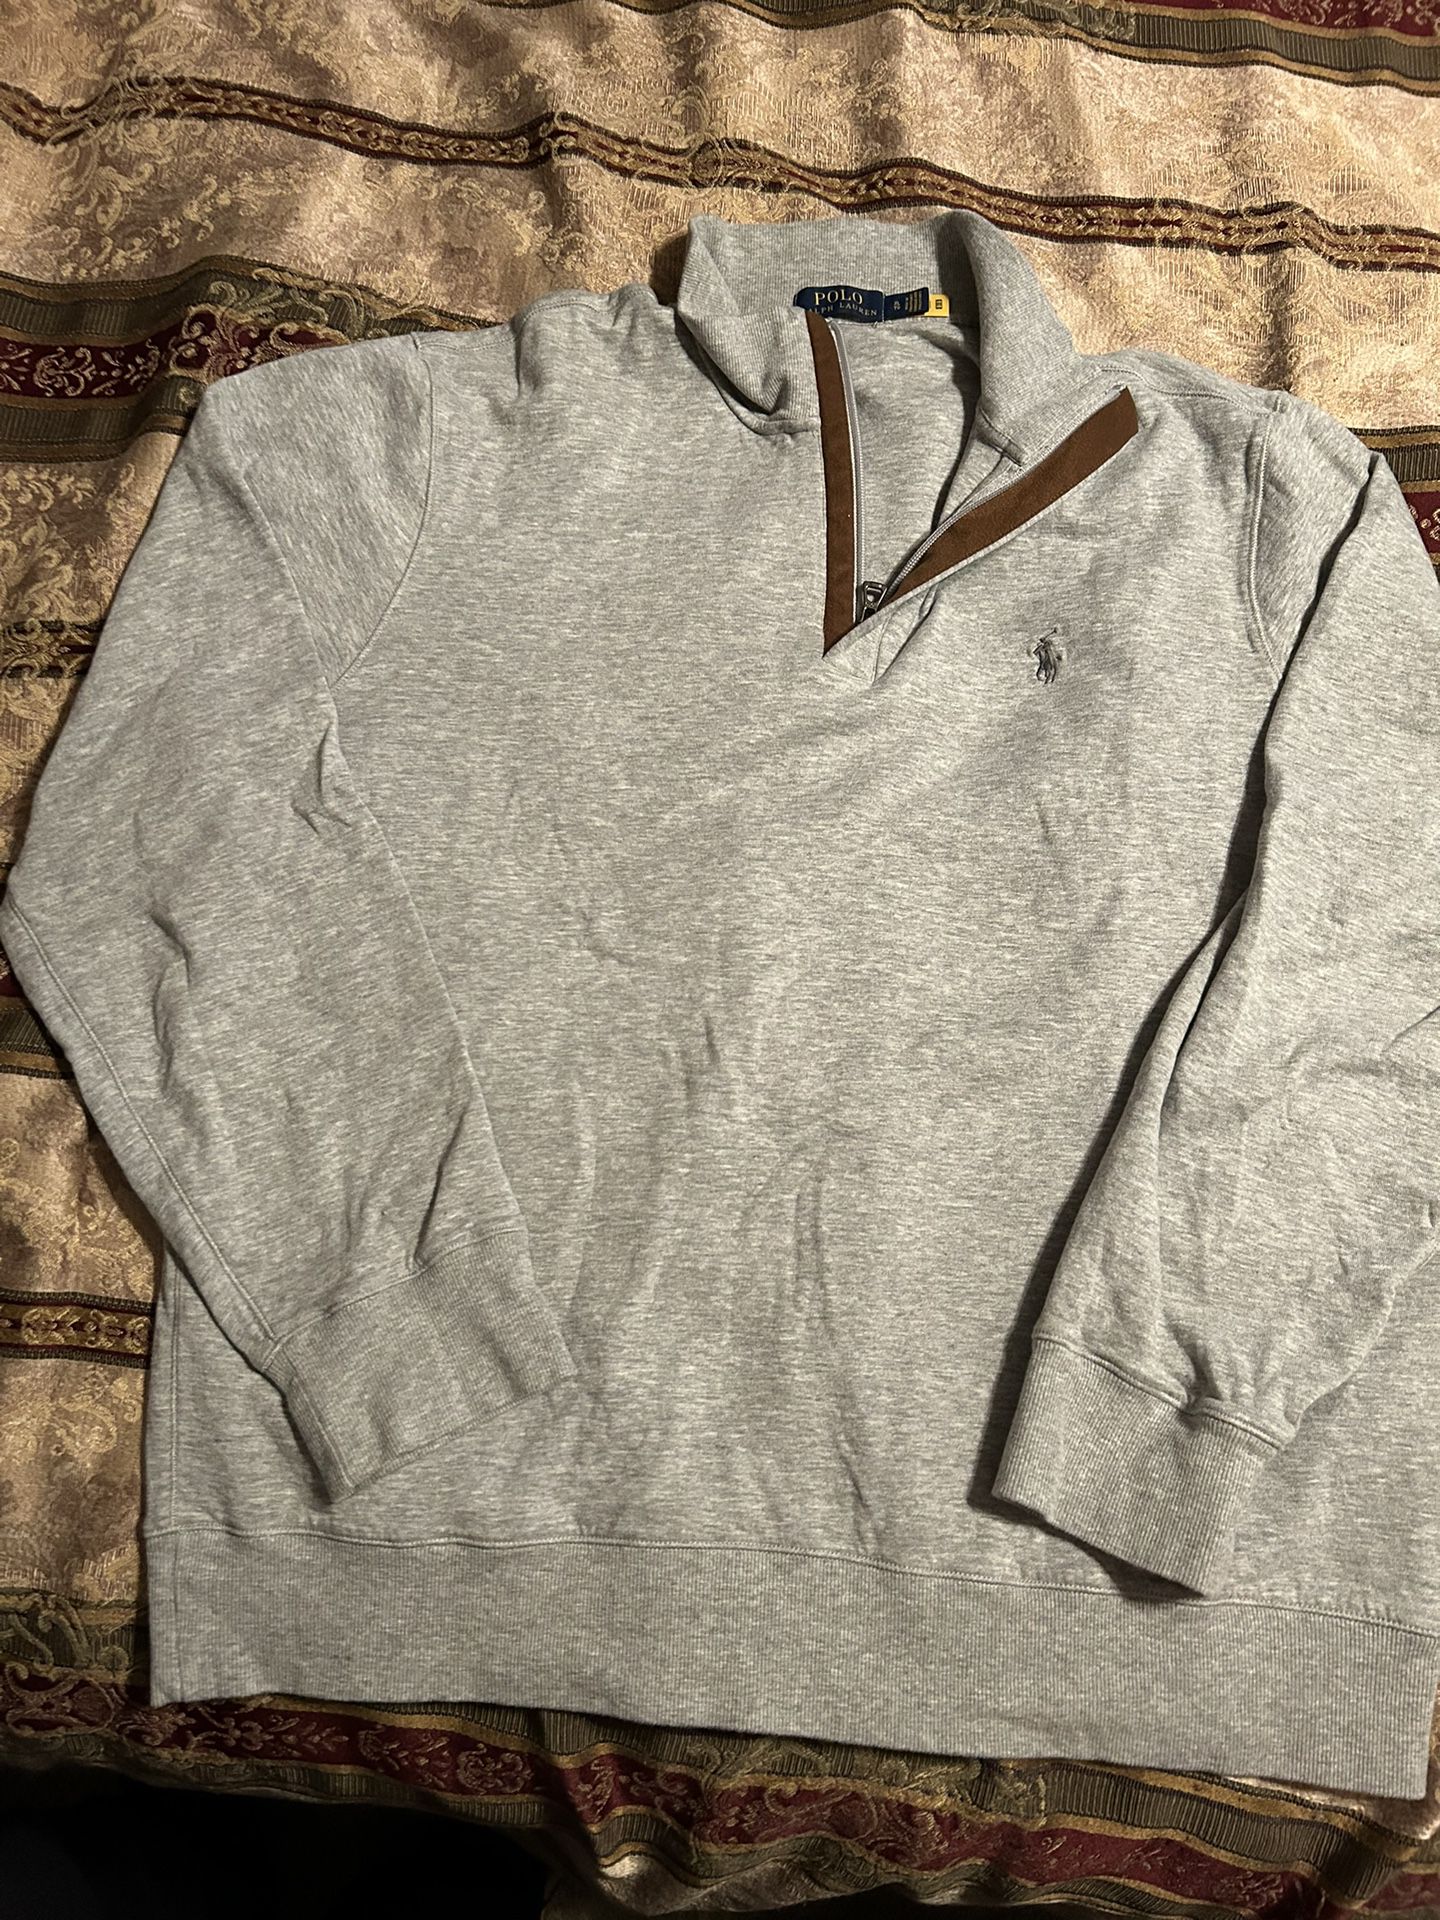 Ralph Lauren polo Long Sleeve Shirt